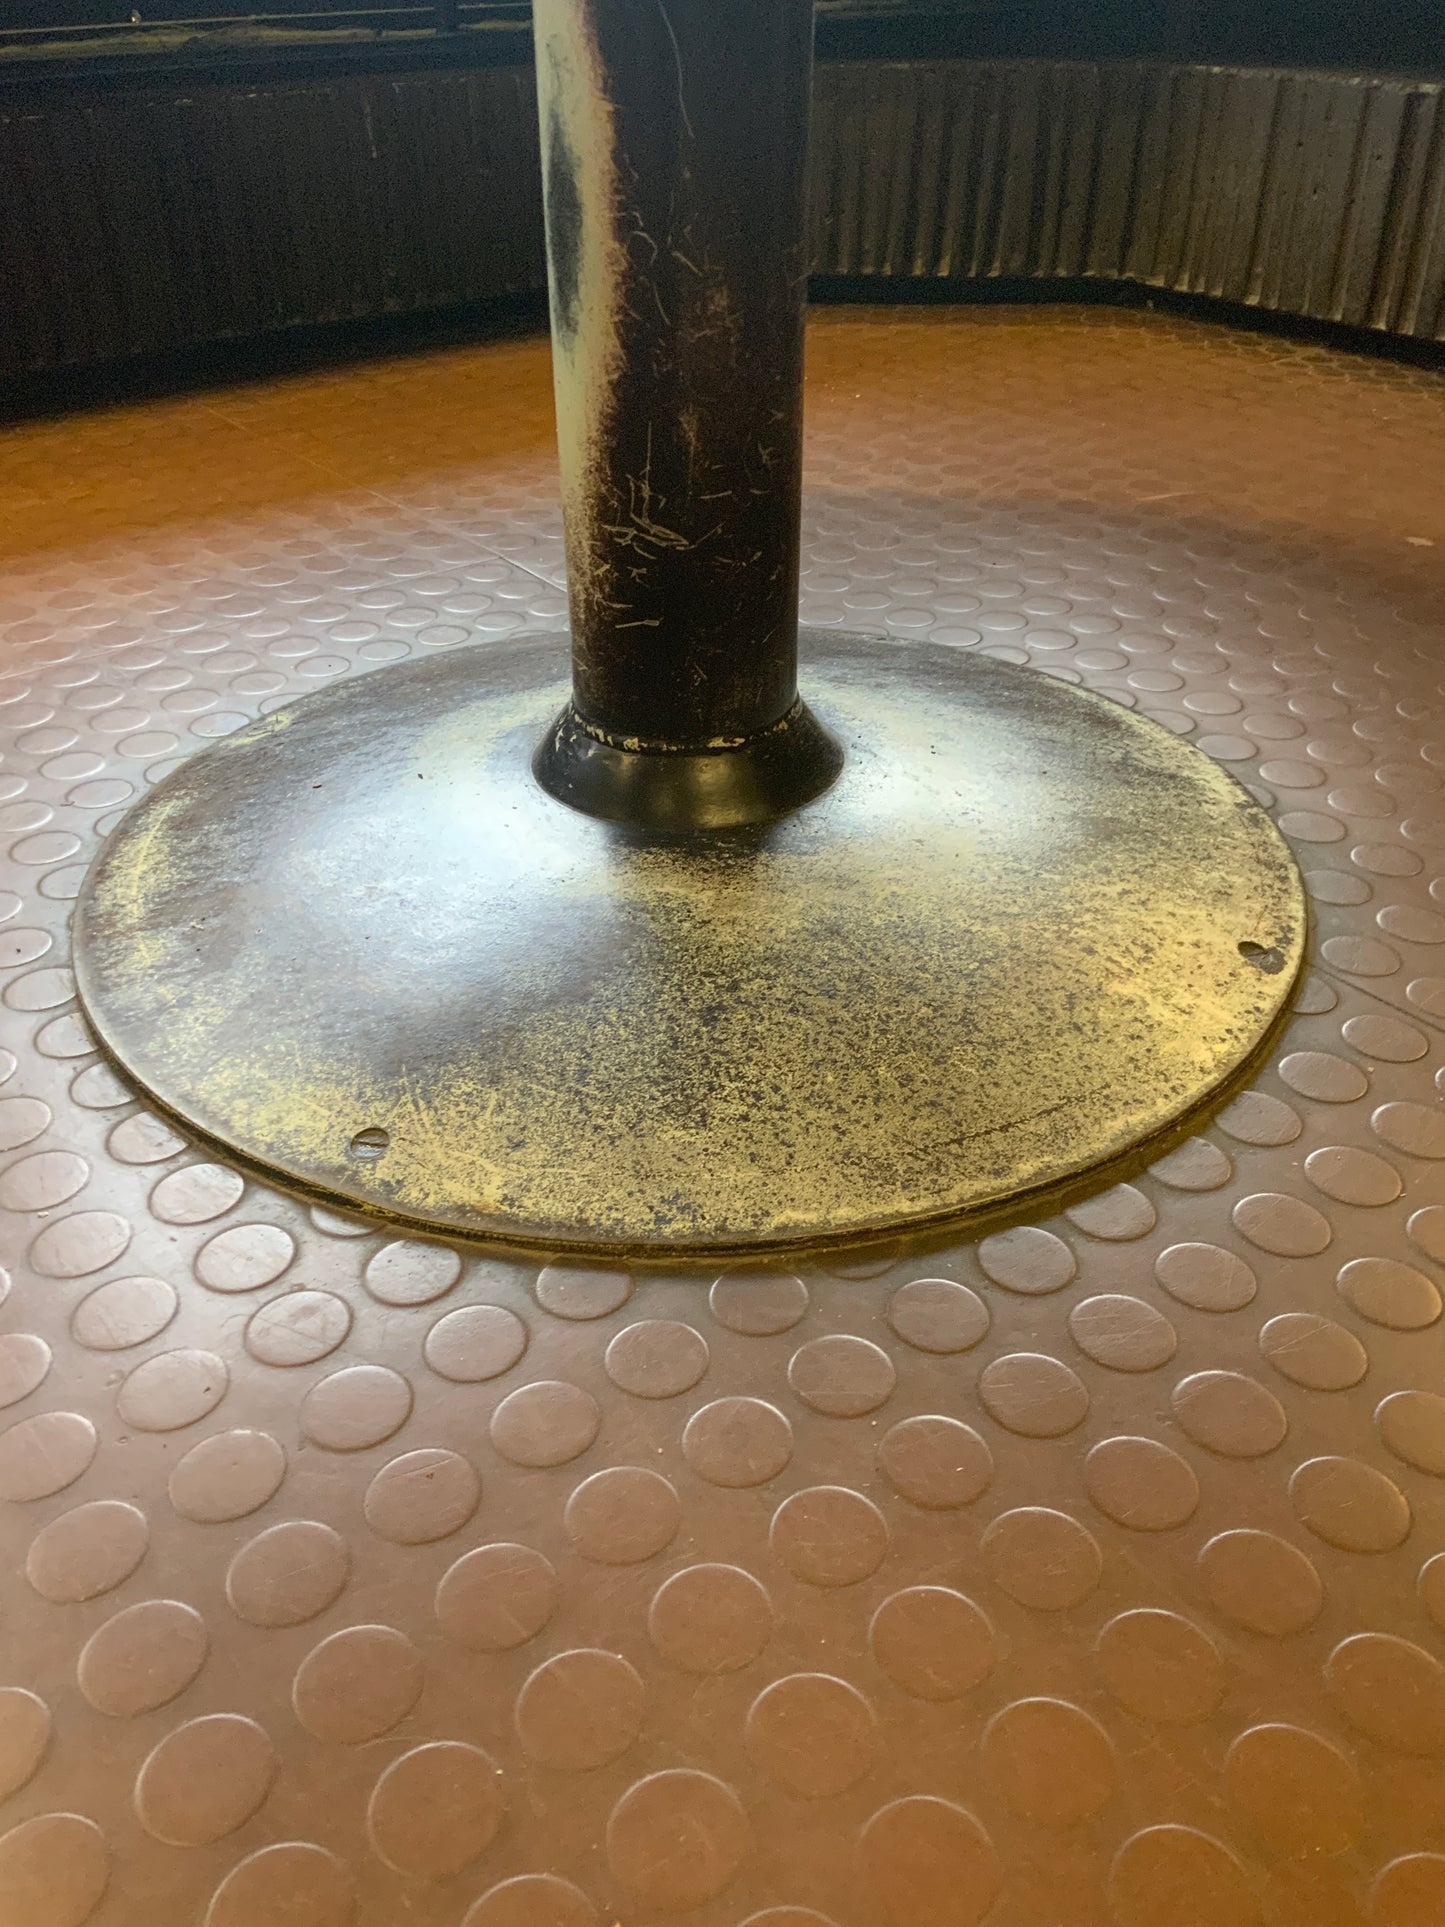 Runder Tisch 1040 mm Durchmesser